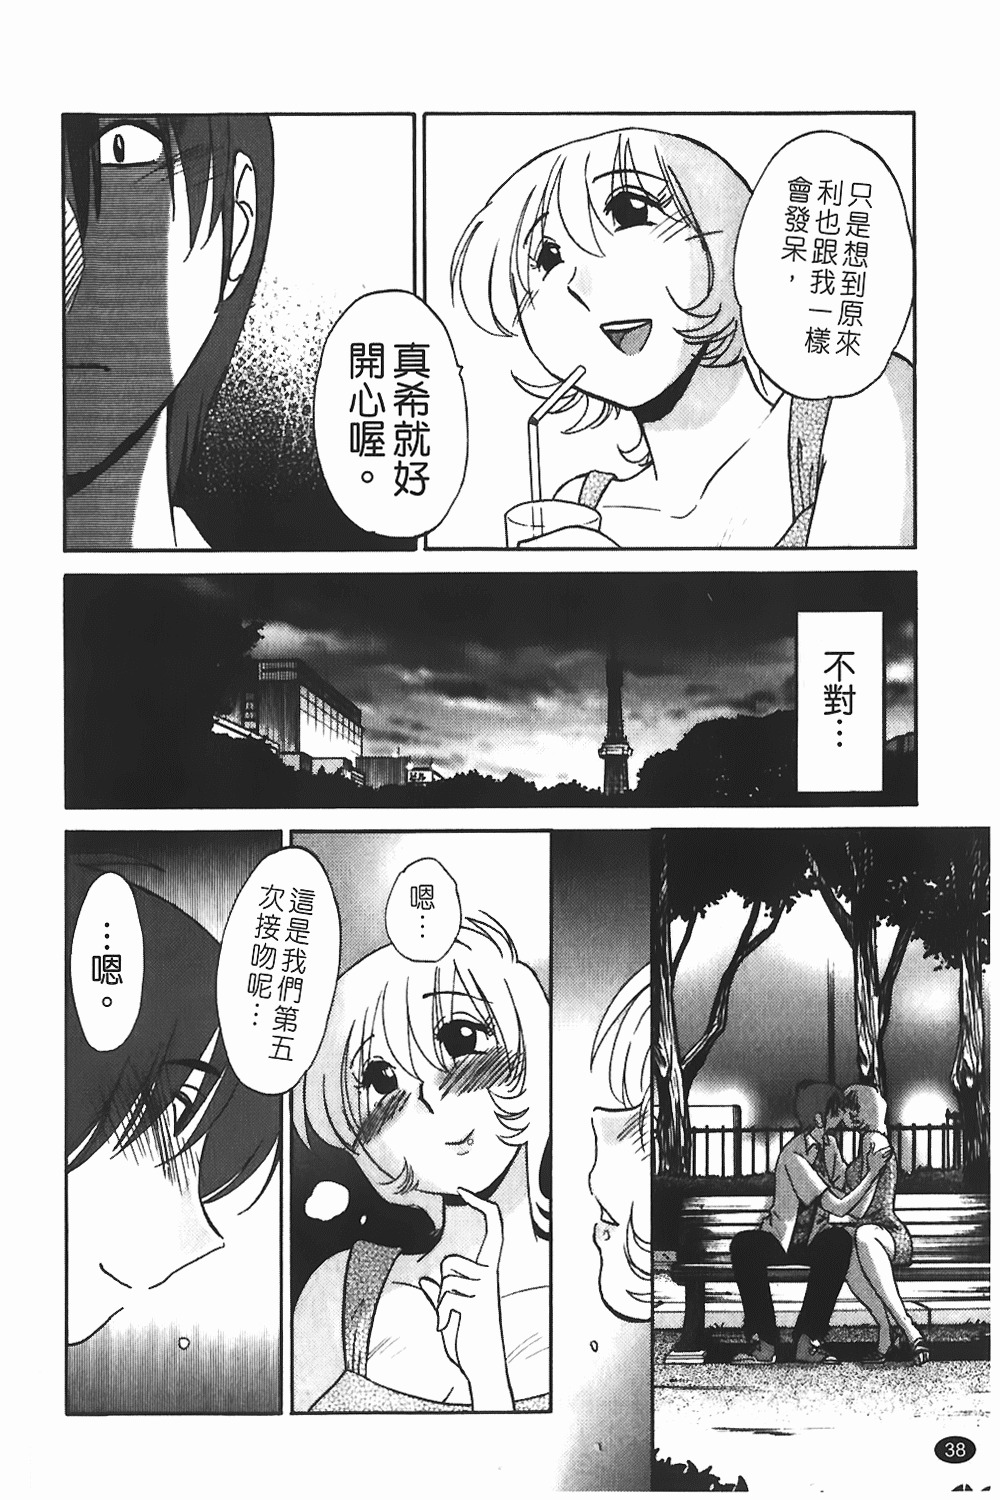 [TsuyaTsuya] Monokage no Iris 1 | 陰影中的伊利斯 1 [Chinese] page 35 full